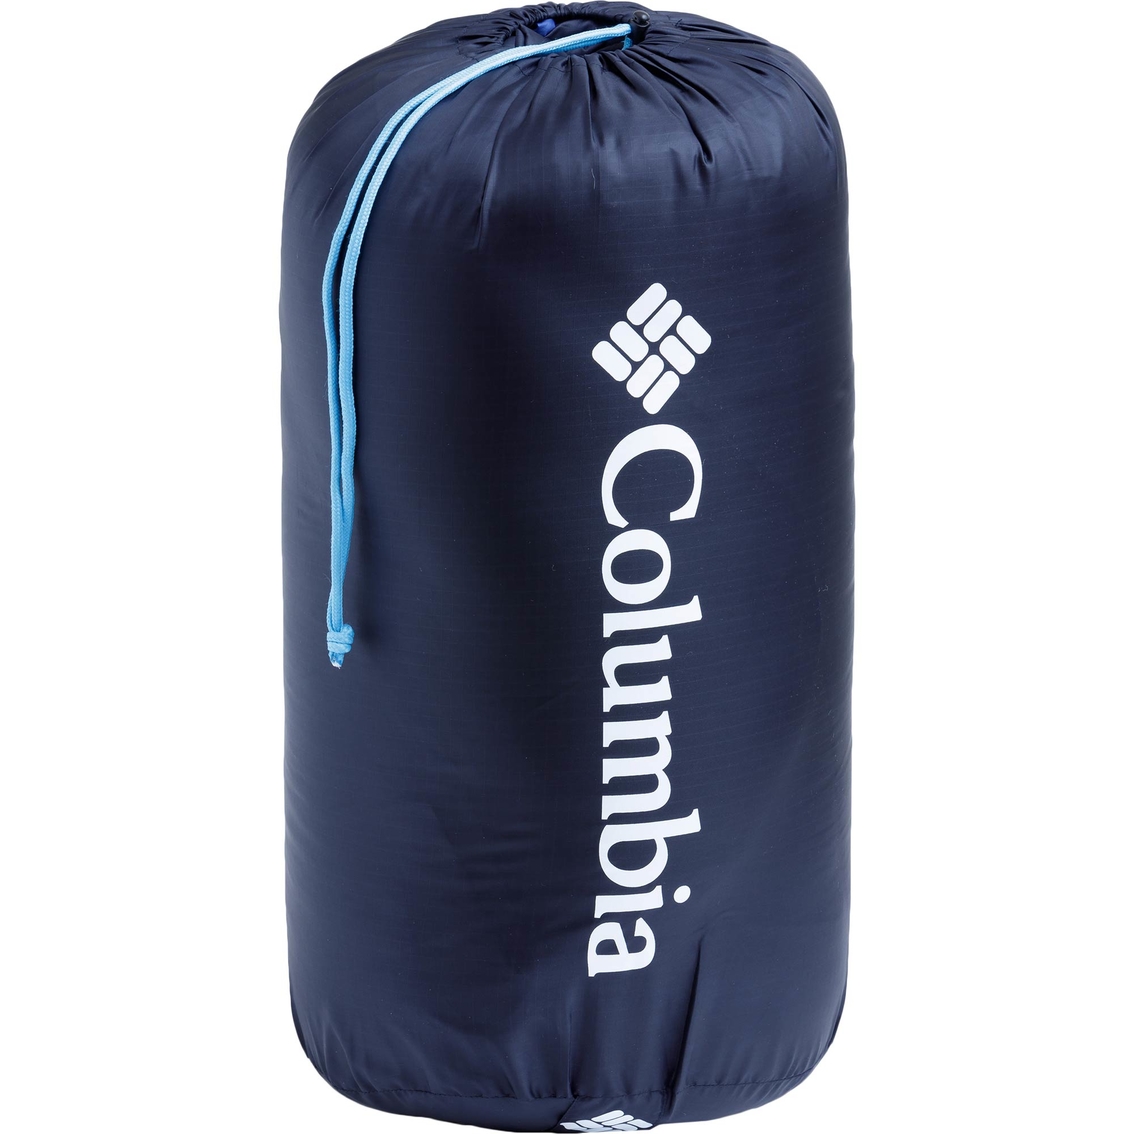 Columbia Coalridge 40F Regular Sleeping Bag - Image 8 of 8